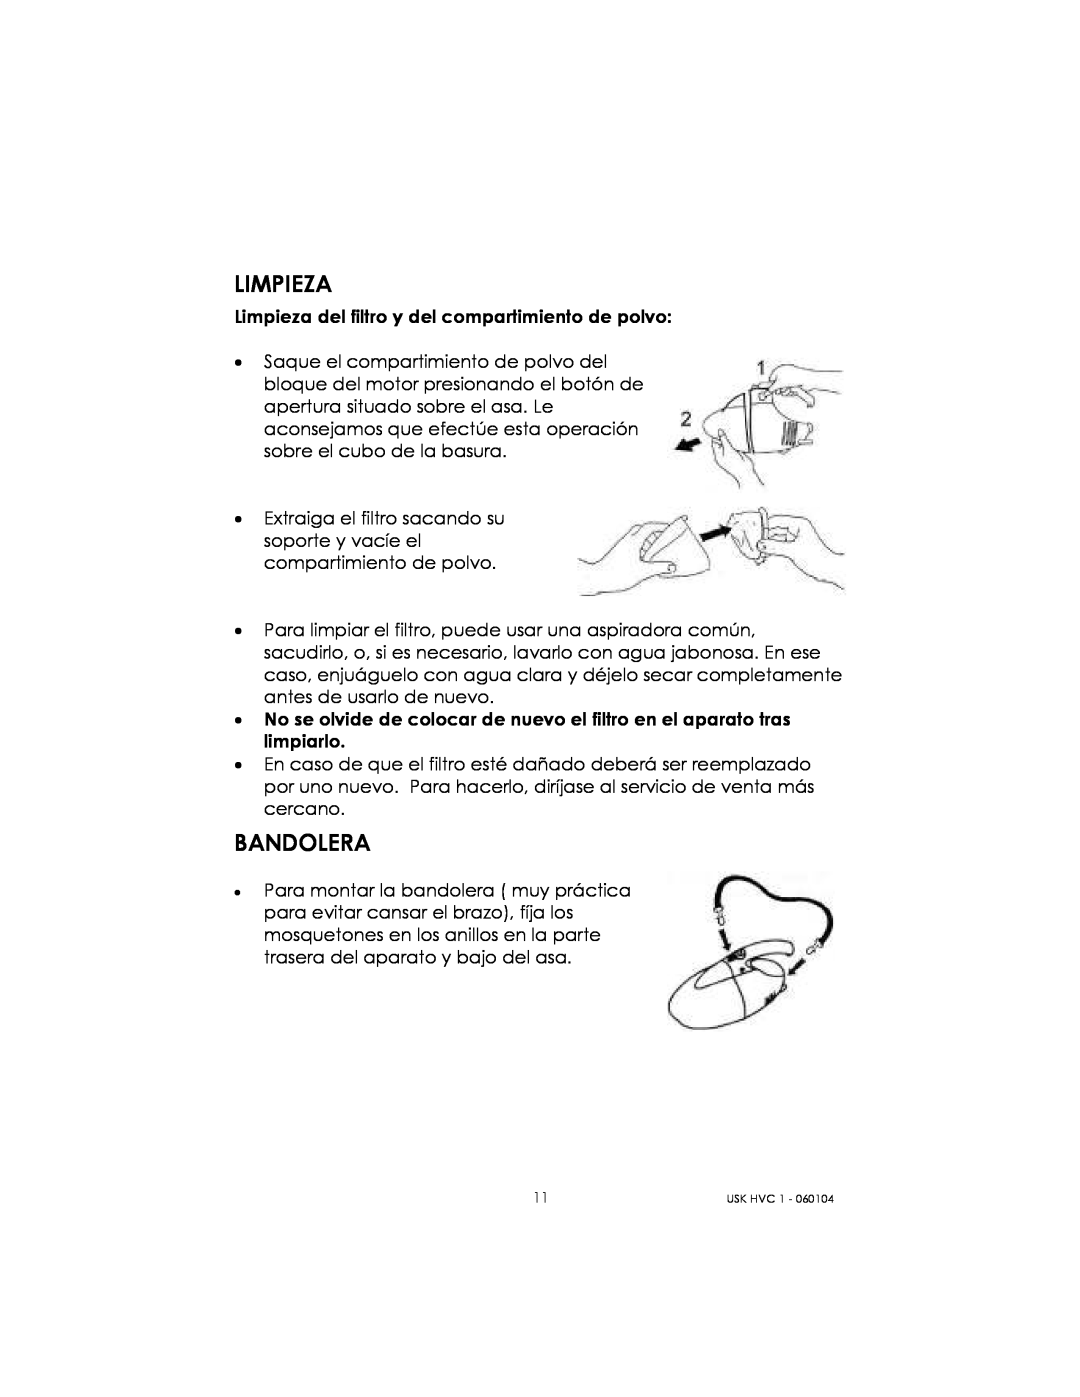 Kalorik USK HVC 1 - 060104 manual Limpieza, Bandolera 